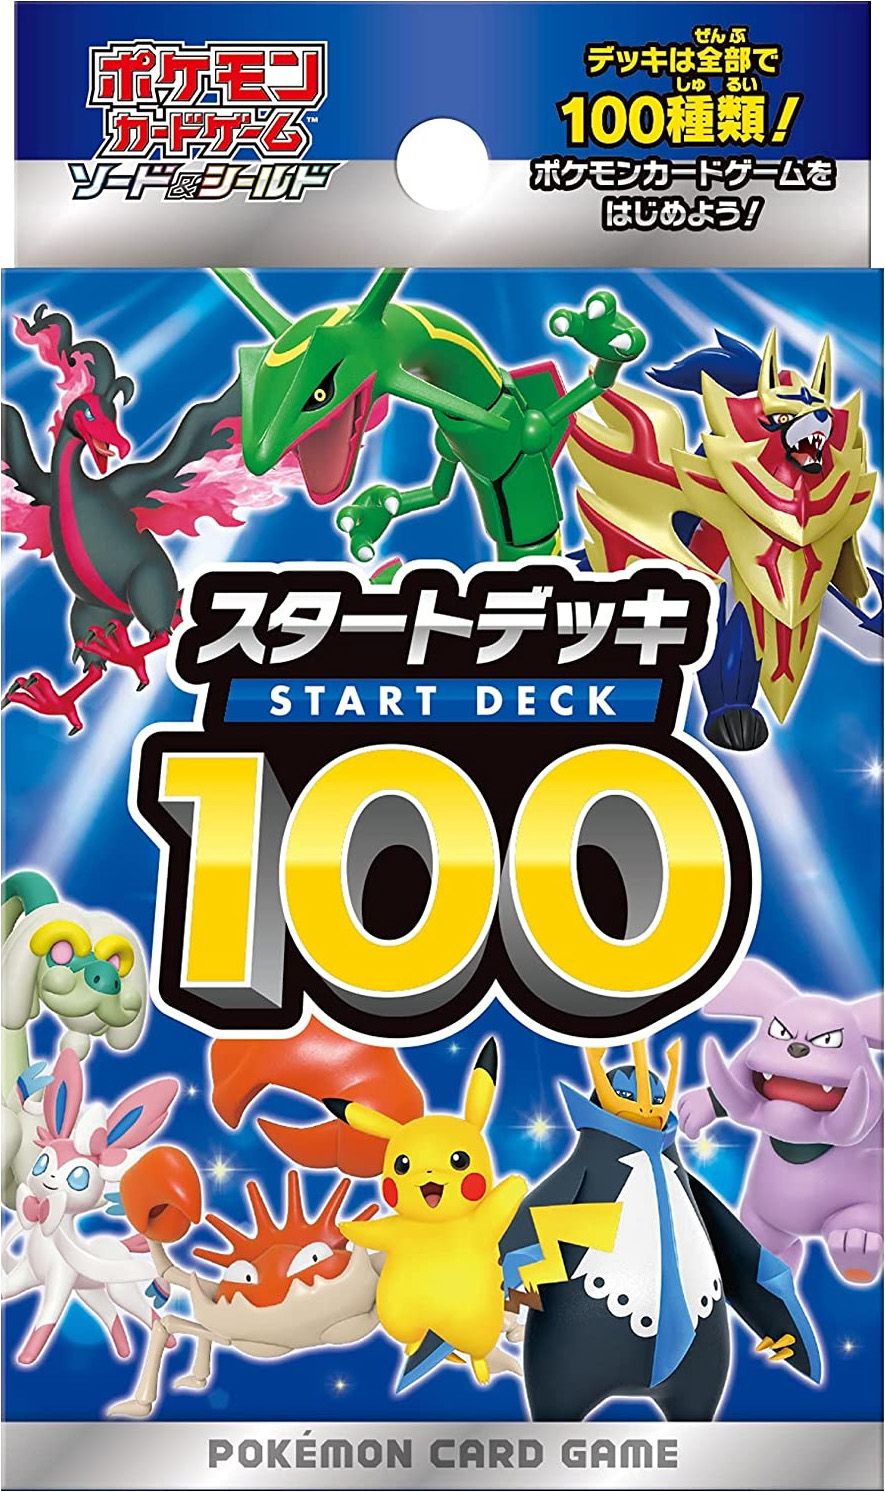 New Morpeko V, Raikou V from 'Start Deck 100' 